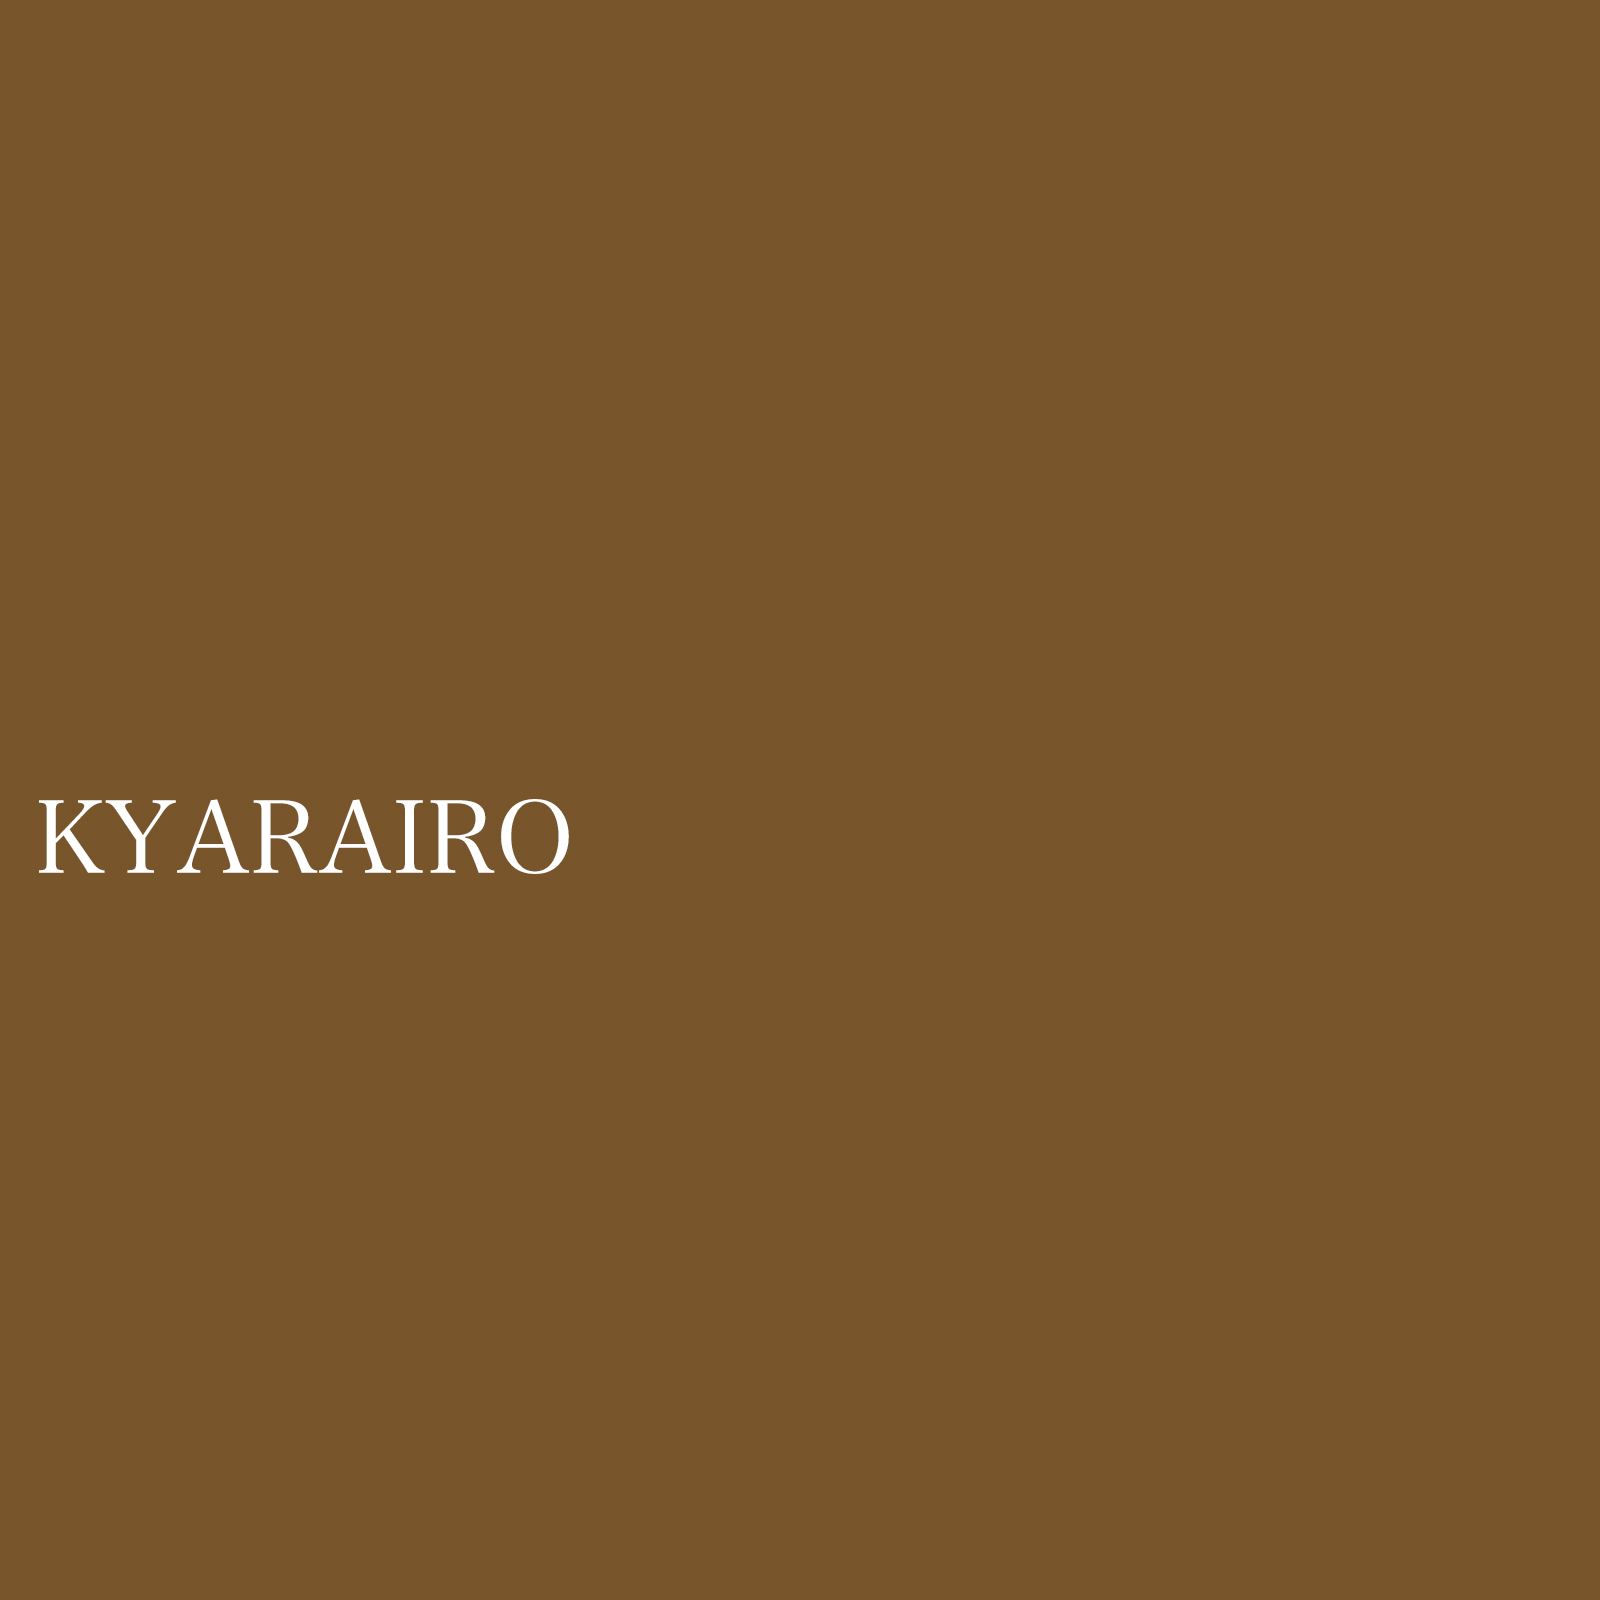 kyarairo